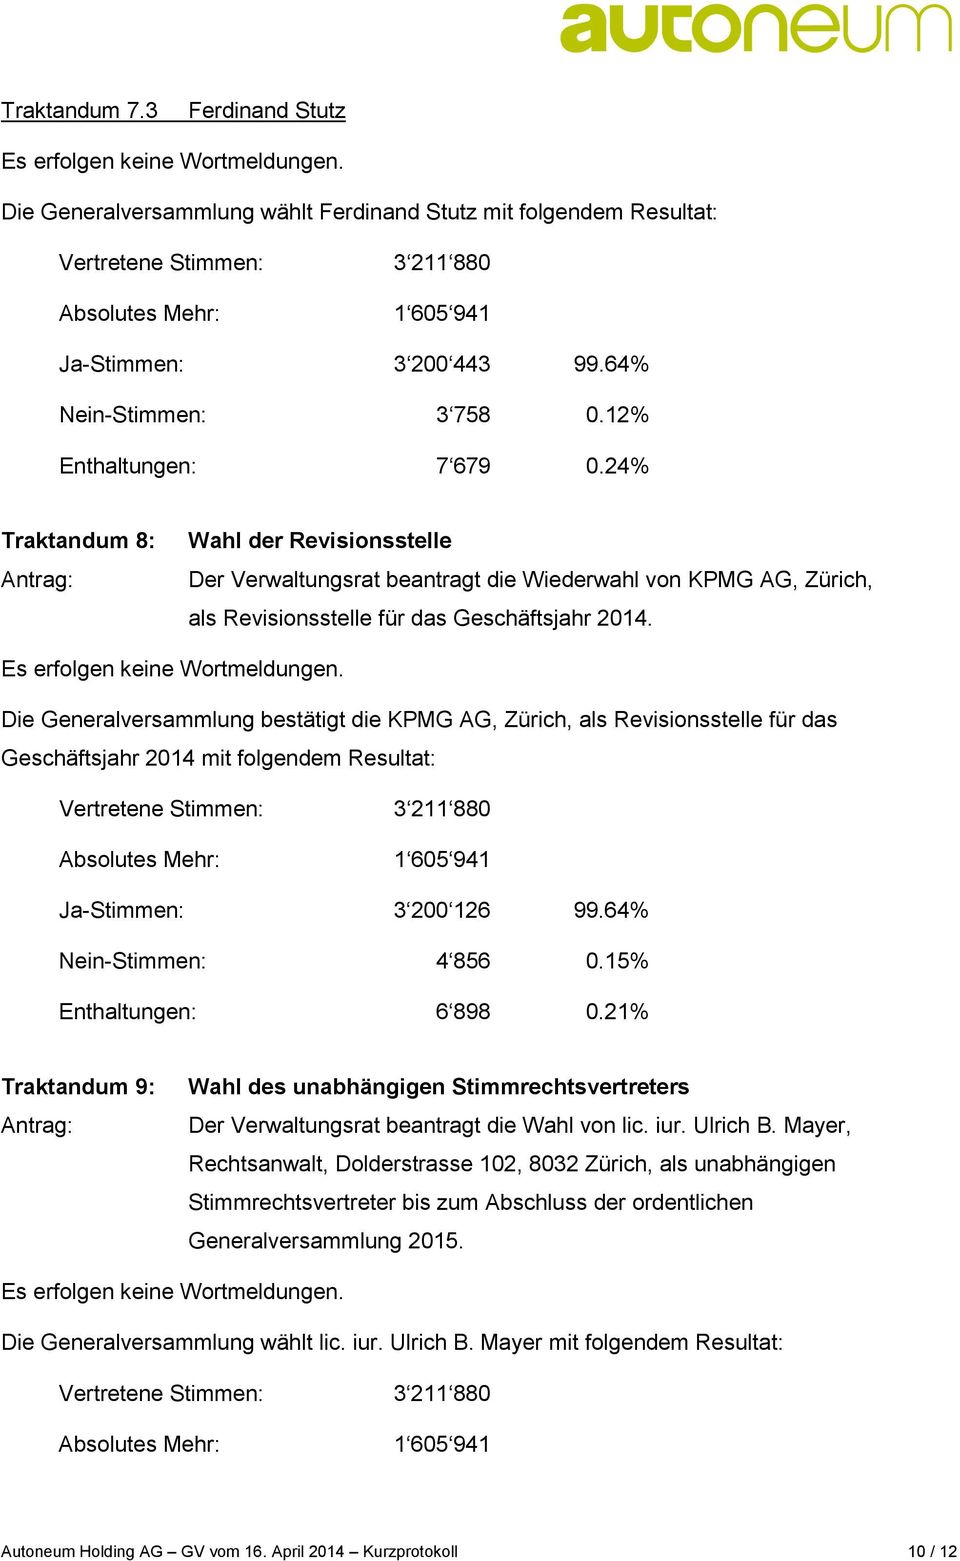 Die Generalversammlung bestätigt die KPMG AG, Zürich, als Revisionsstelle für das Geschäftsjahr 2014 mit folgendem Resultat: Ja-Stimmen: 3 200 126 99.64% Nein-Stimmen: 4 856 0.